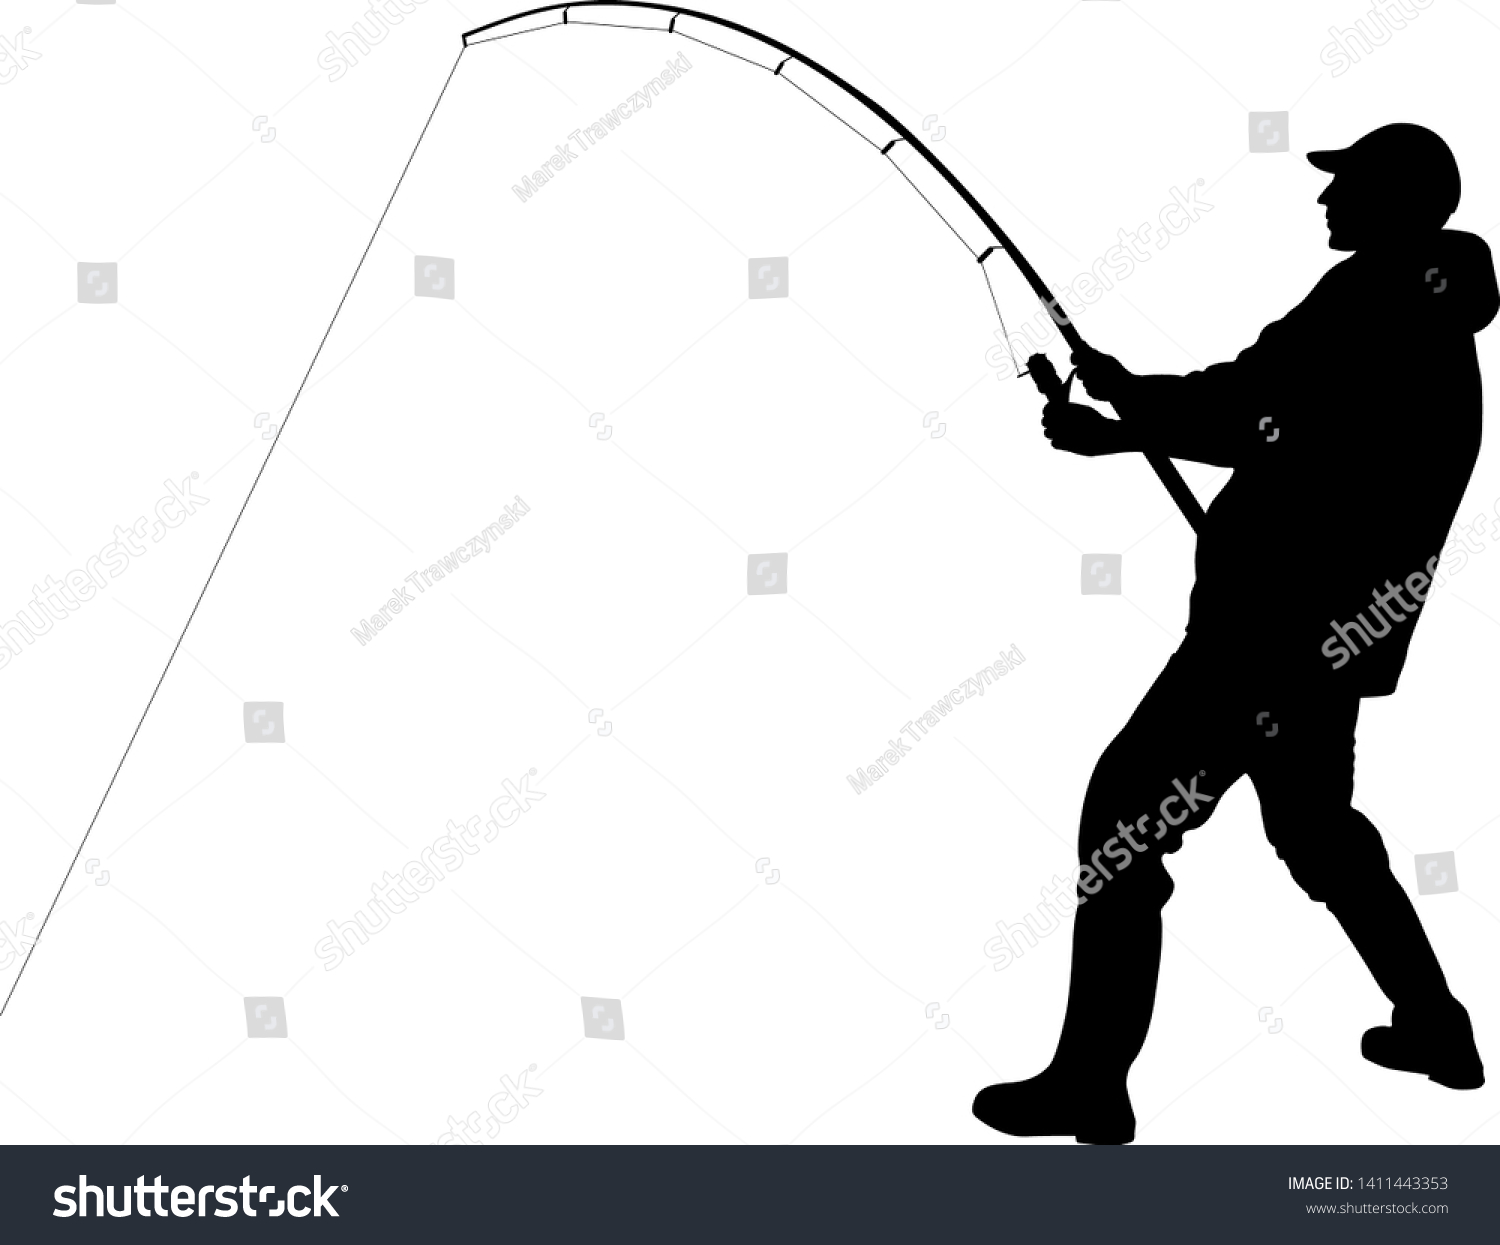 釣り竿を持つ釣り人のシルエット のベクター画像素材 ロイヤリティフリー